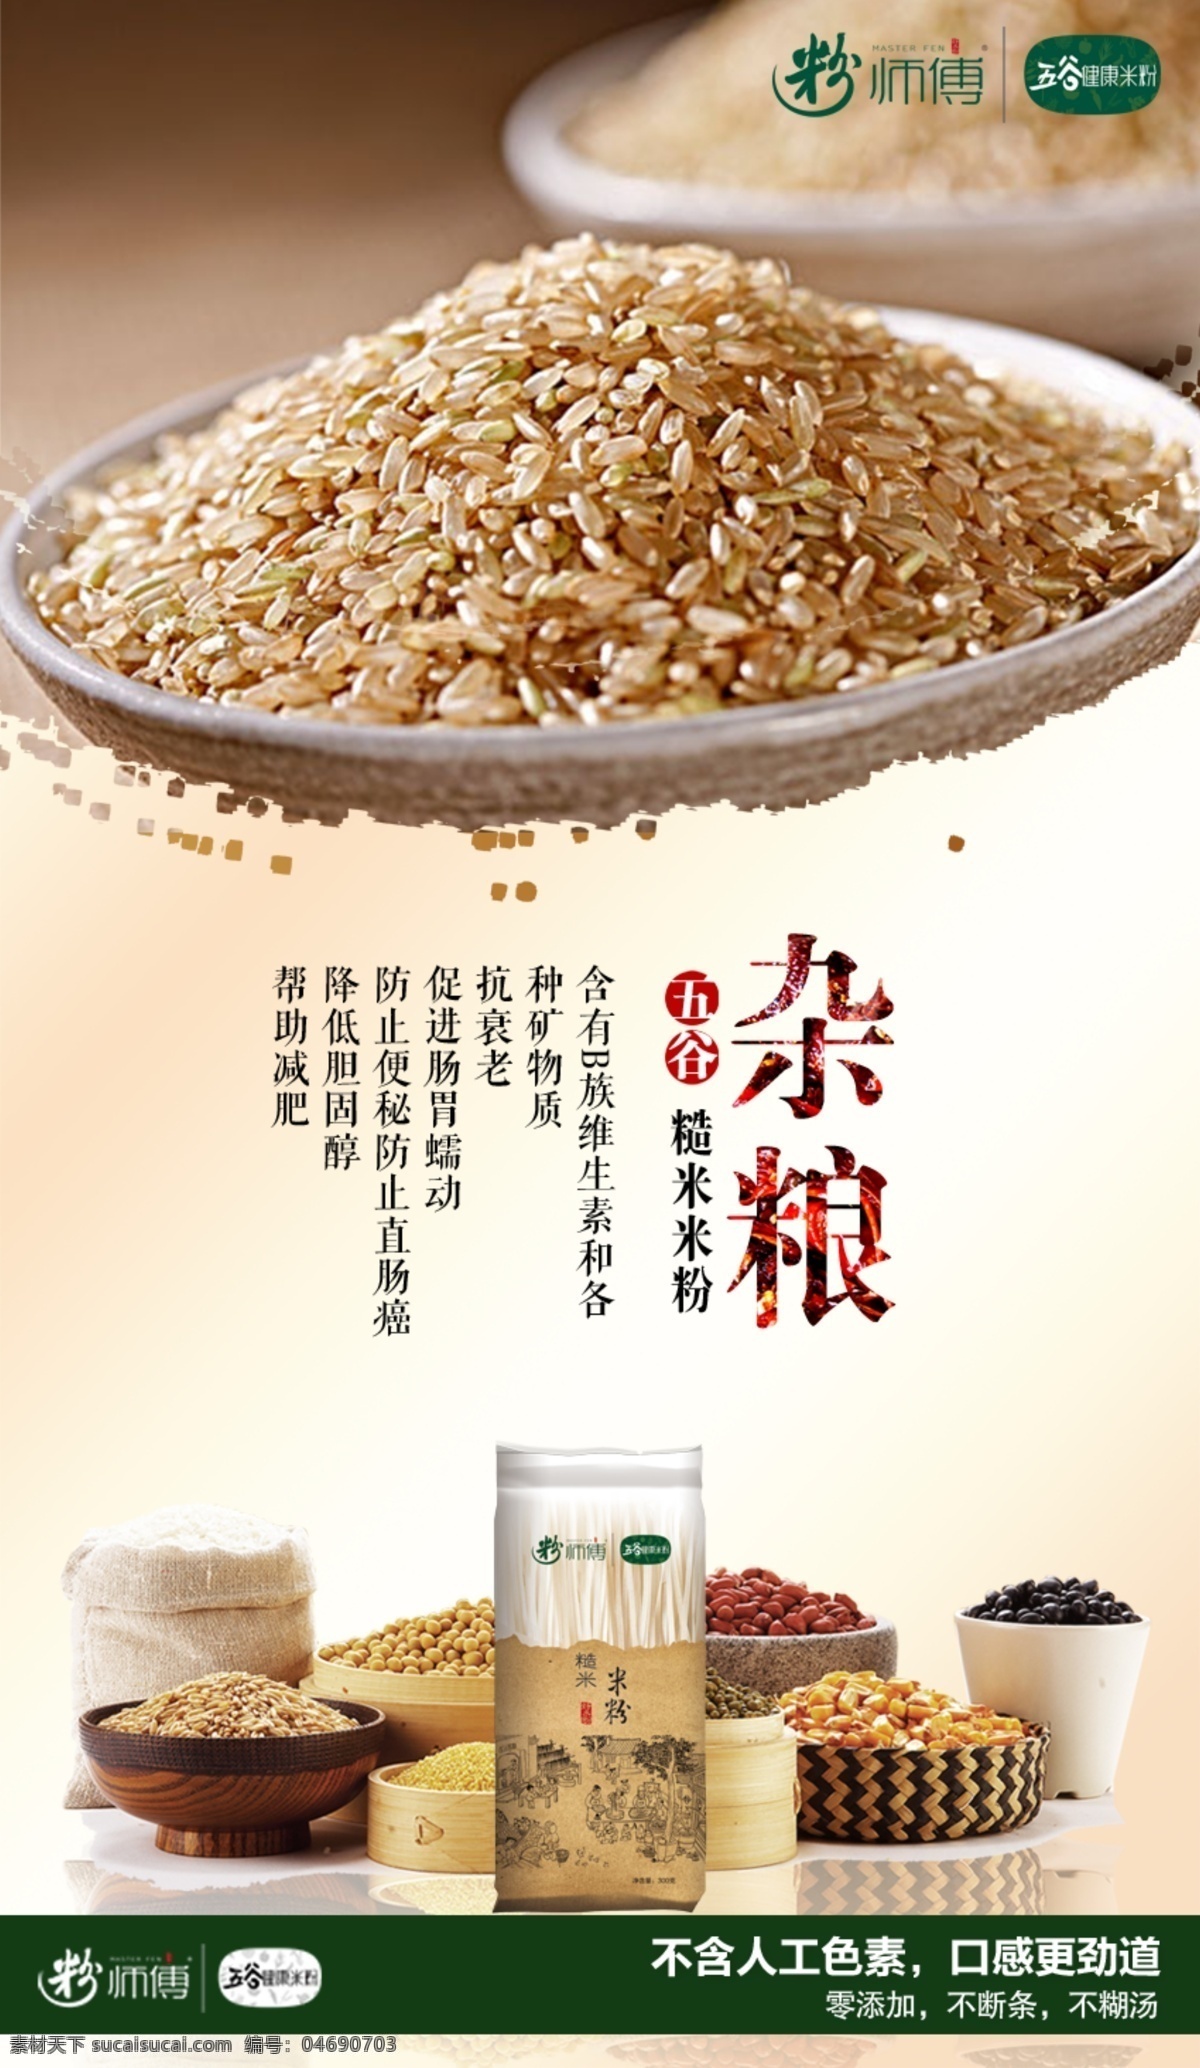 糙米米粉海报 米粉 健康 糙米 绿豆 杂粮